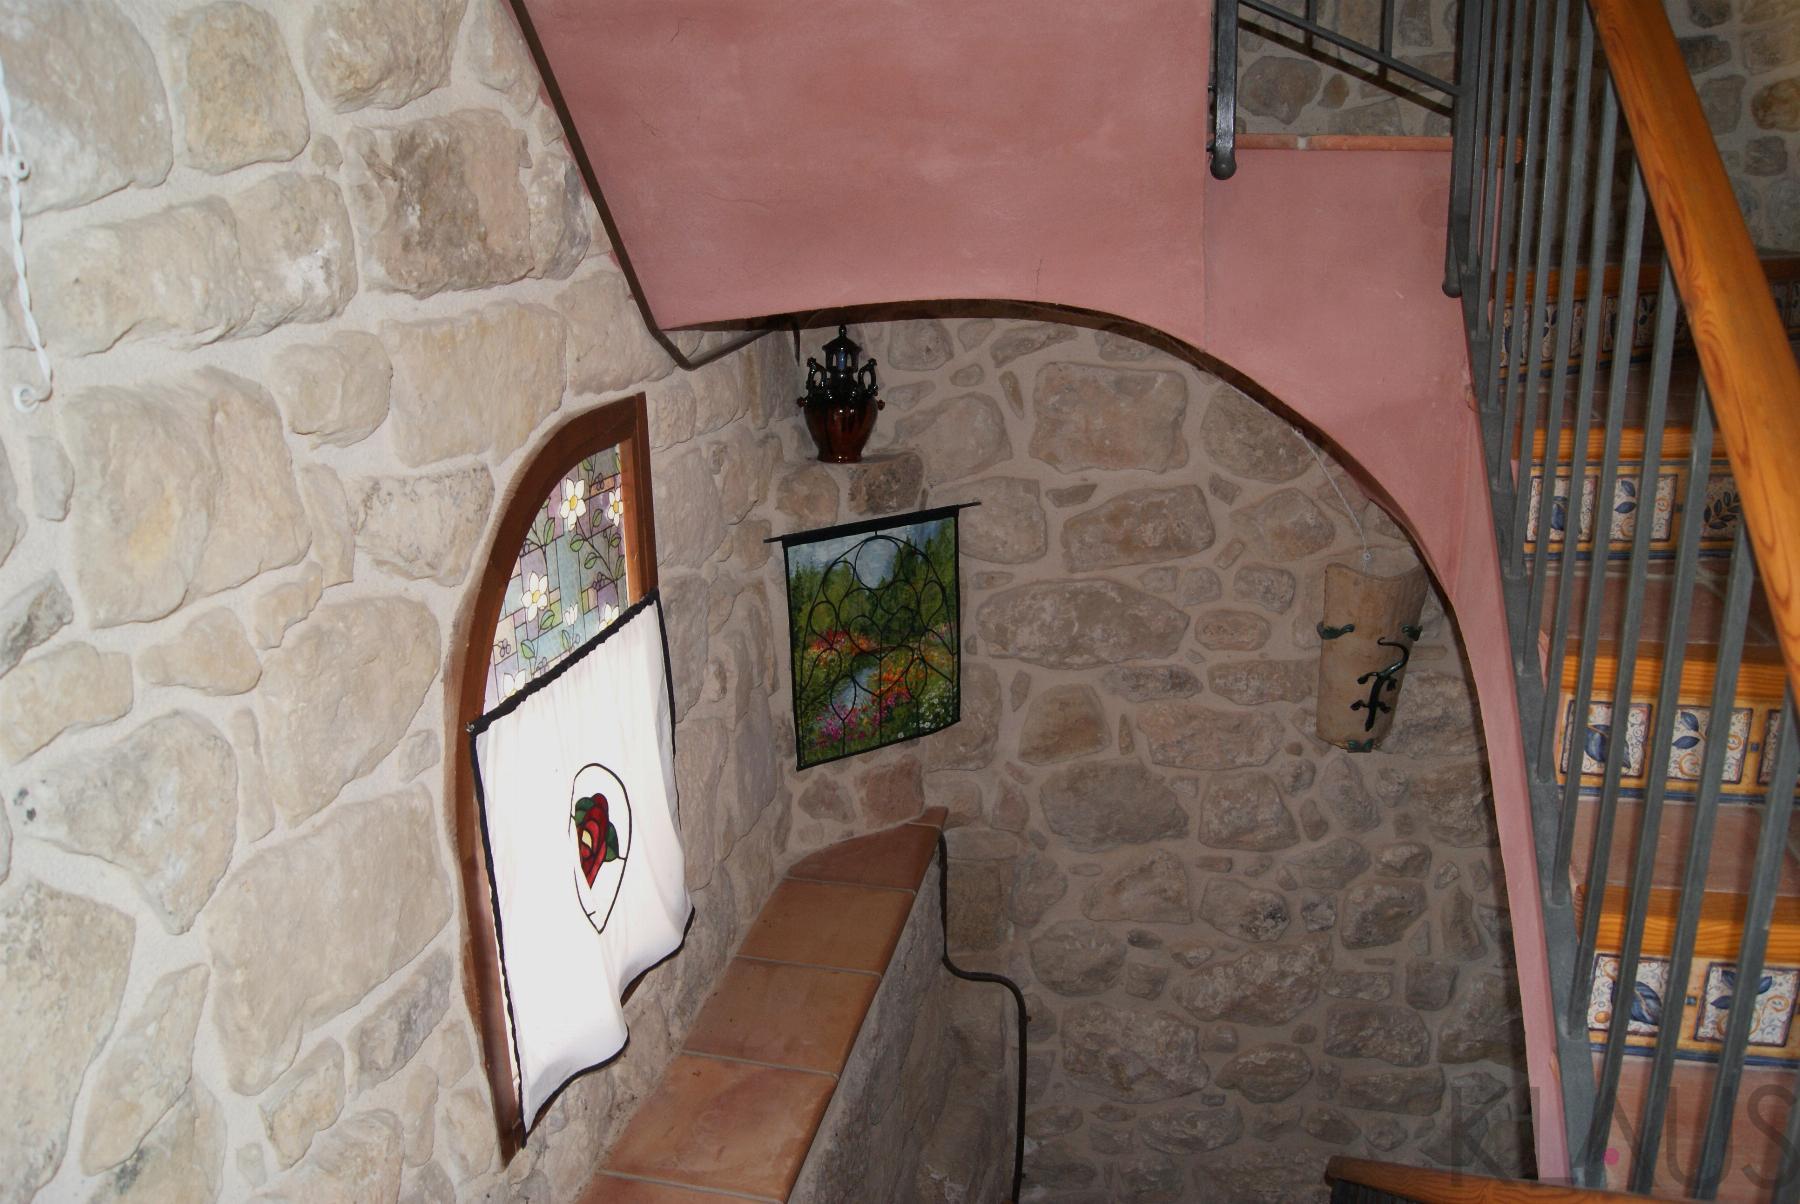 Verkoop van huis in Horta de Sant Joan